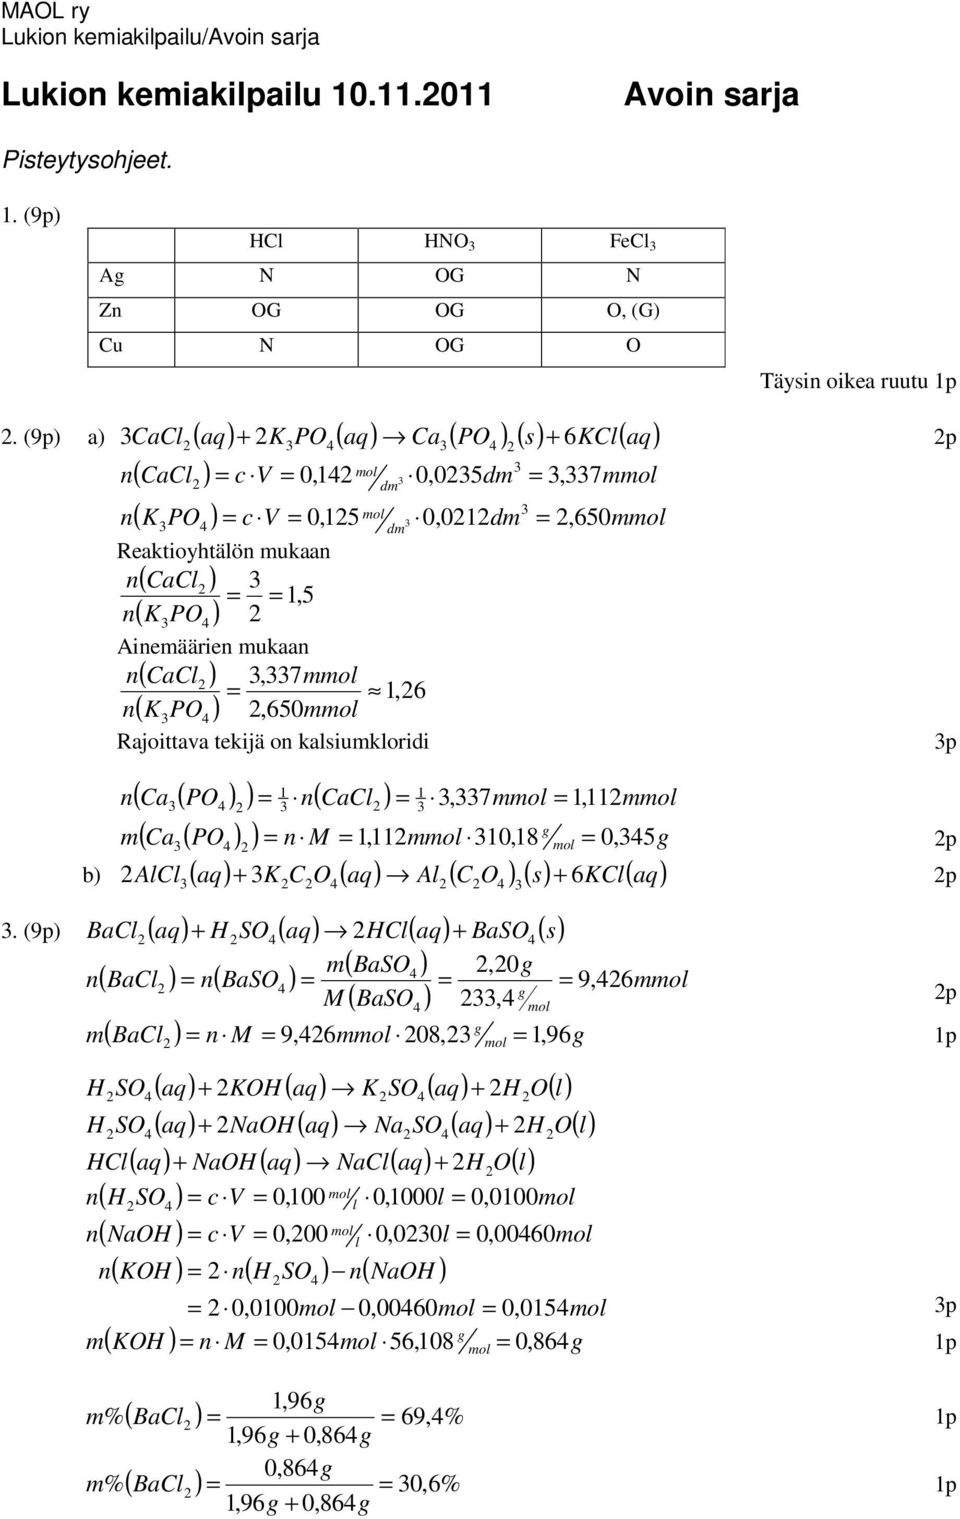 kalsiukloridi 1 1 ( a( P ) ) ( al ),7 1,11 ( a( P ) ) M 1,11 10,18 0, 5 b) All ( aq) K ( aq) Al ( ) ( s) 6Kl( aq) + + p.